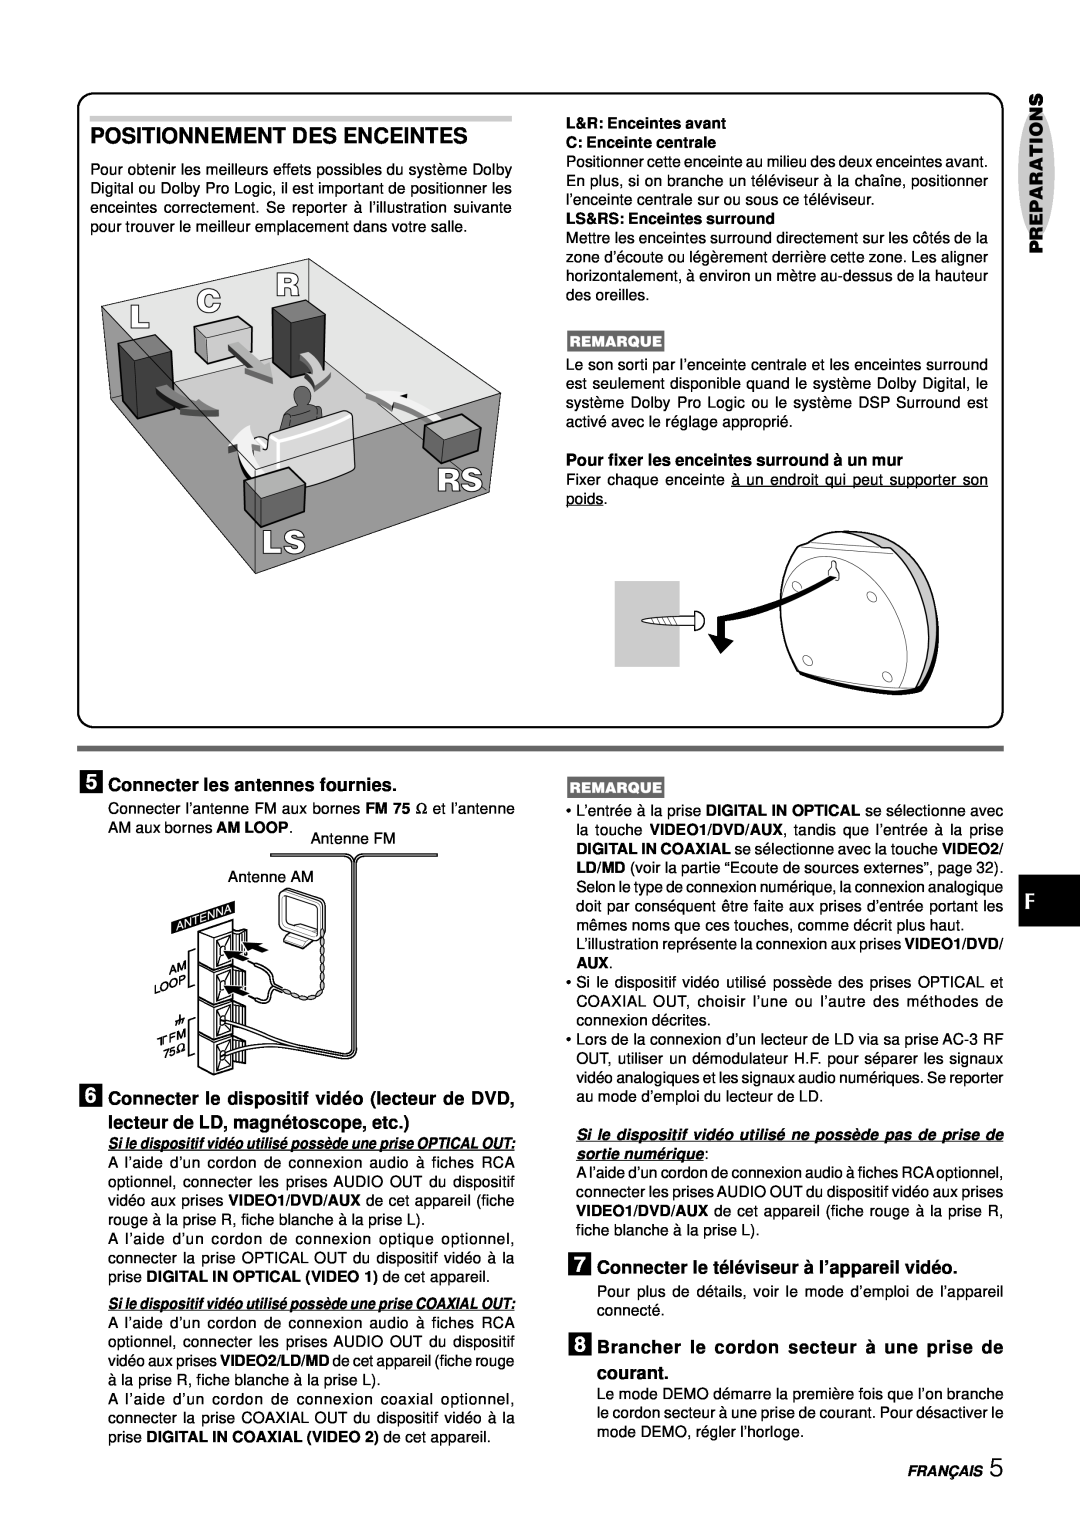 Aiwa NSX-DS8 manual Positionnement Des Enceintes, Preparations, 5Connecter les antennes fournies, Franç Ais 